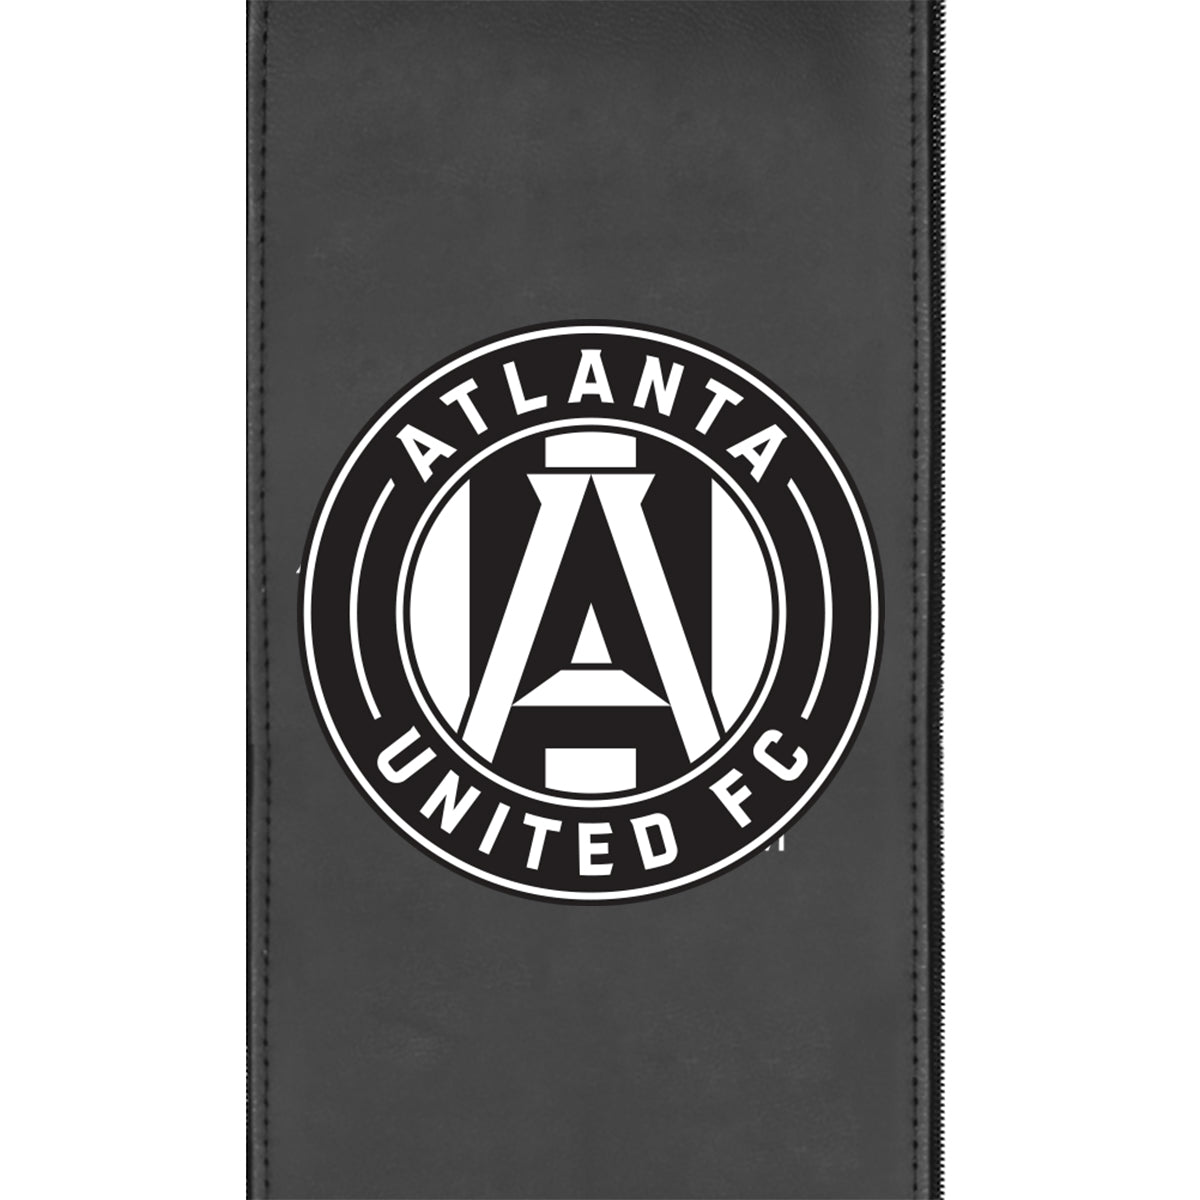 Silver Club Chair with Atlanta United FC Alternate Logo